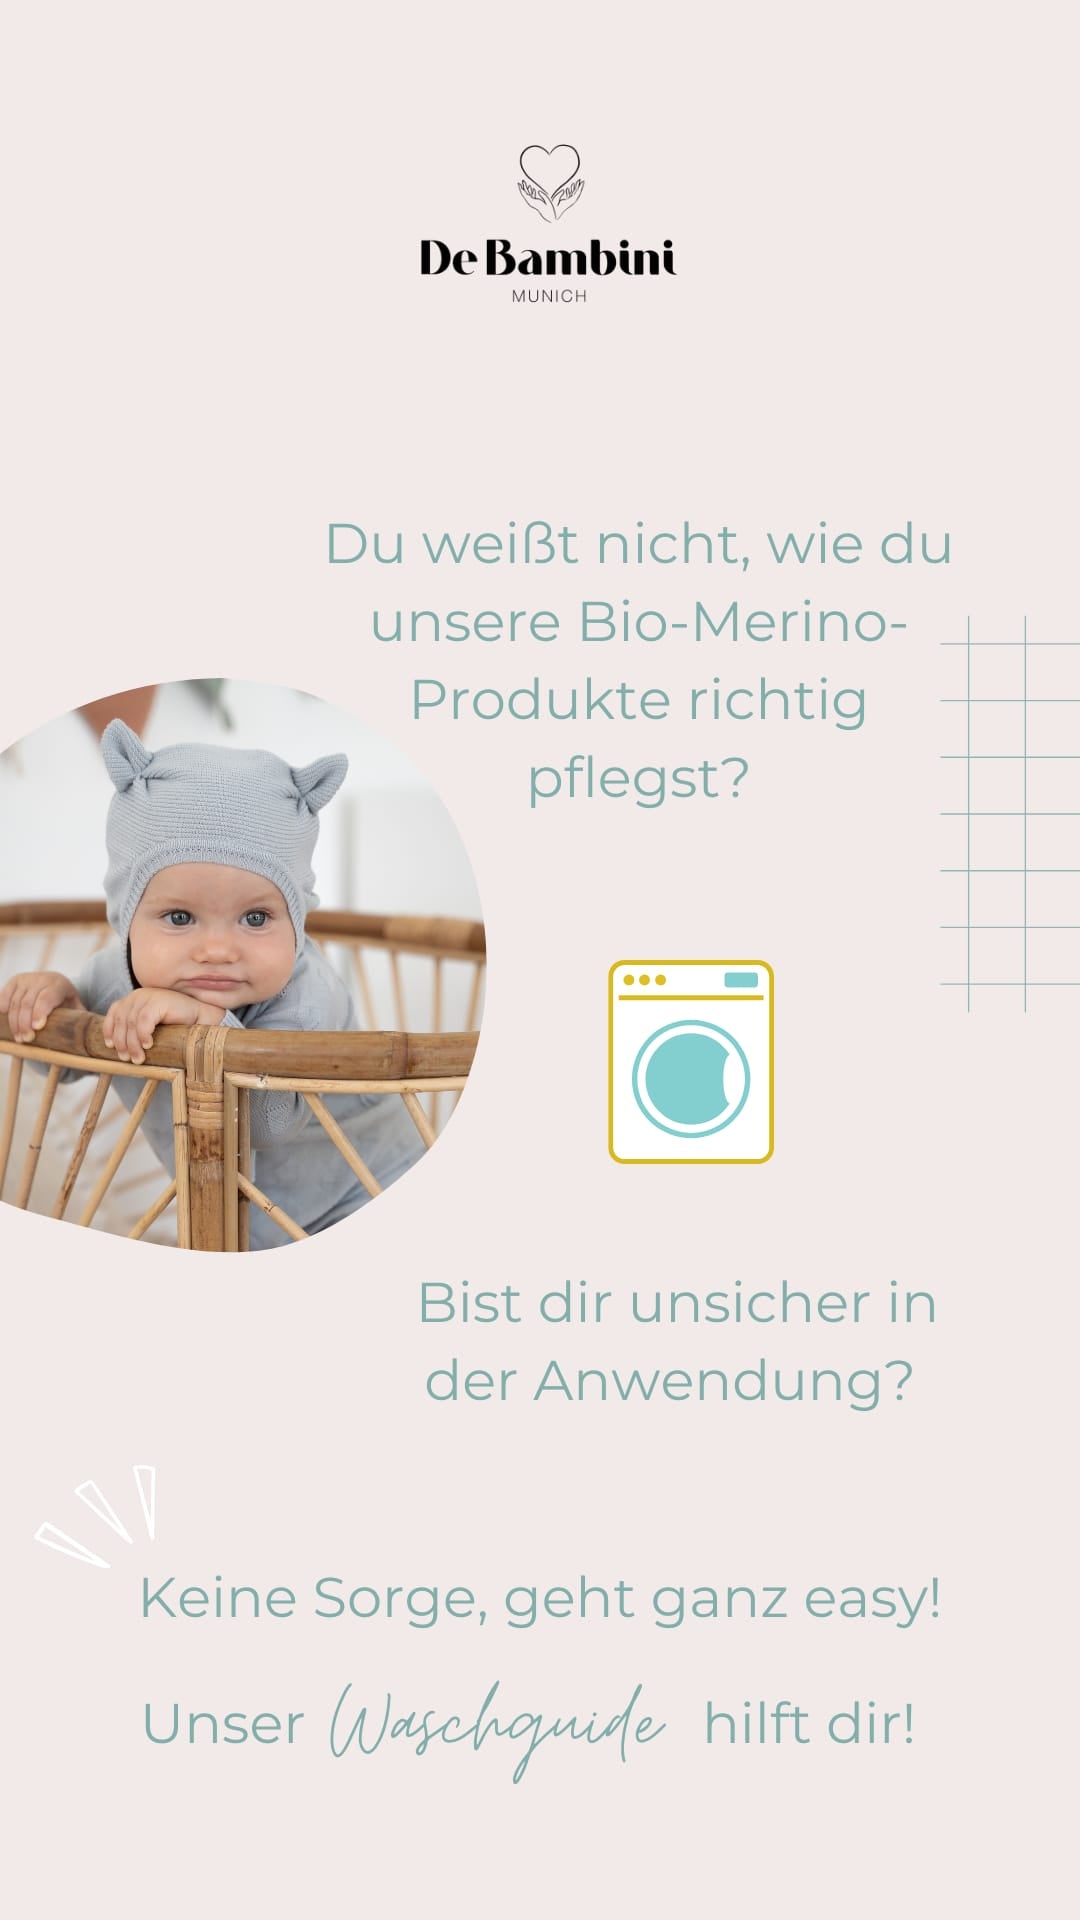 Die besten Tipps für das Waschen von Bio-Merino-Wolle - DE BAMBINI Munich